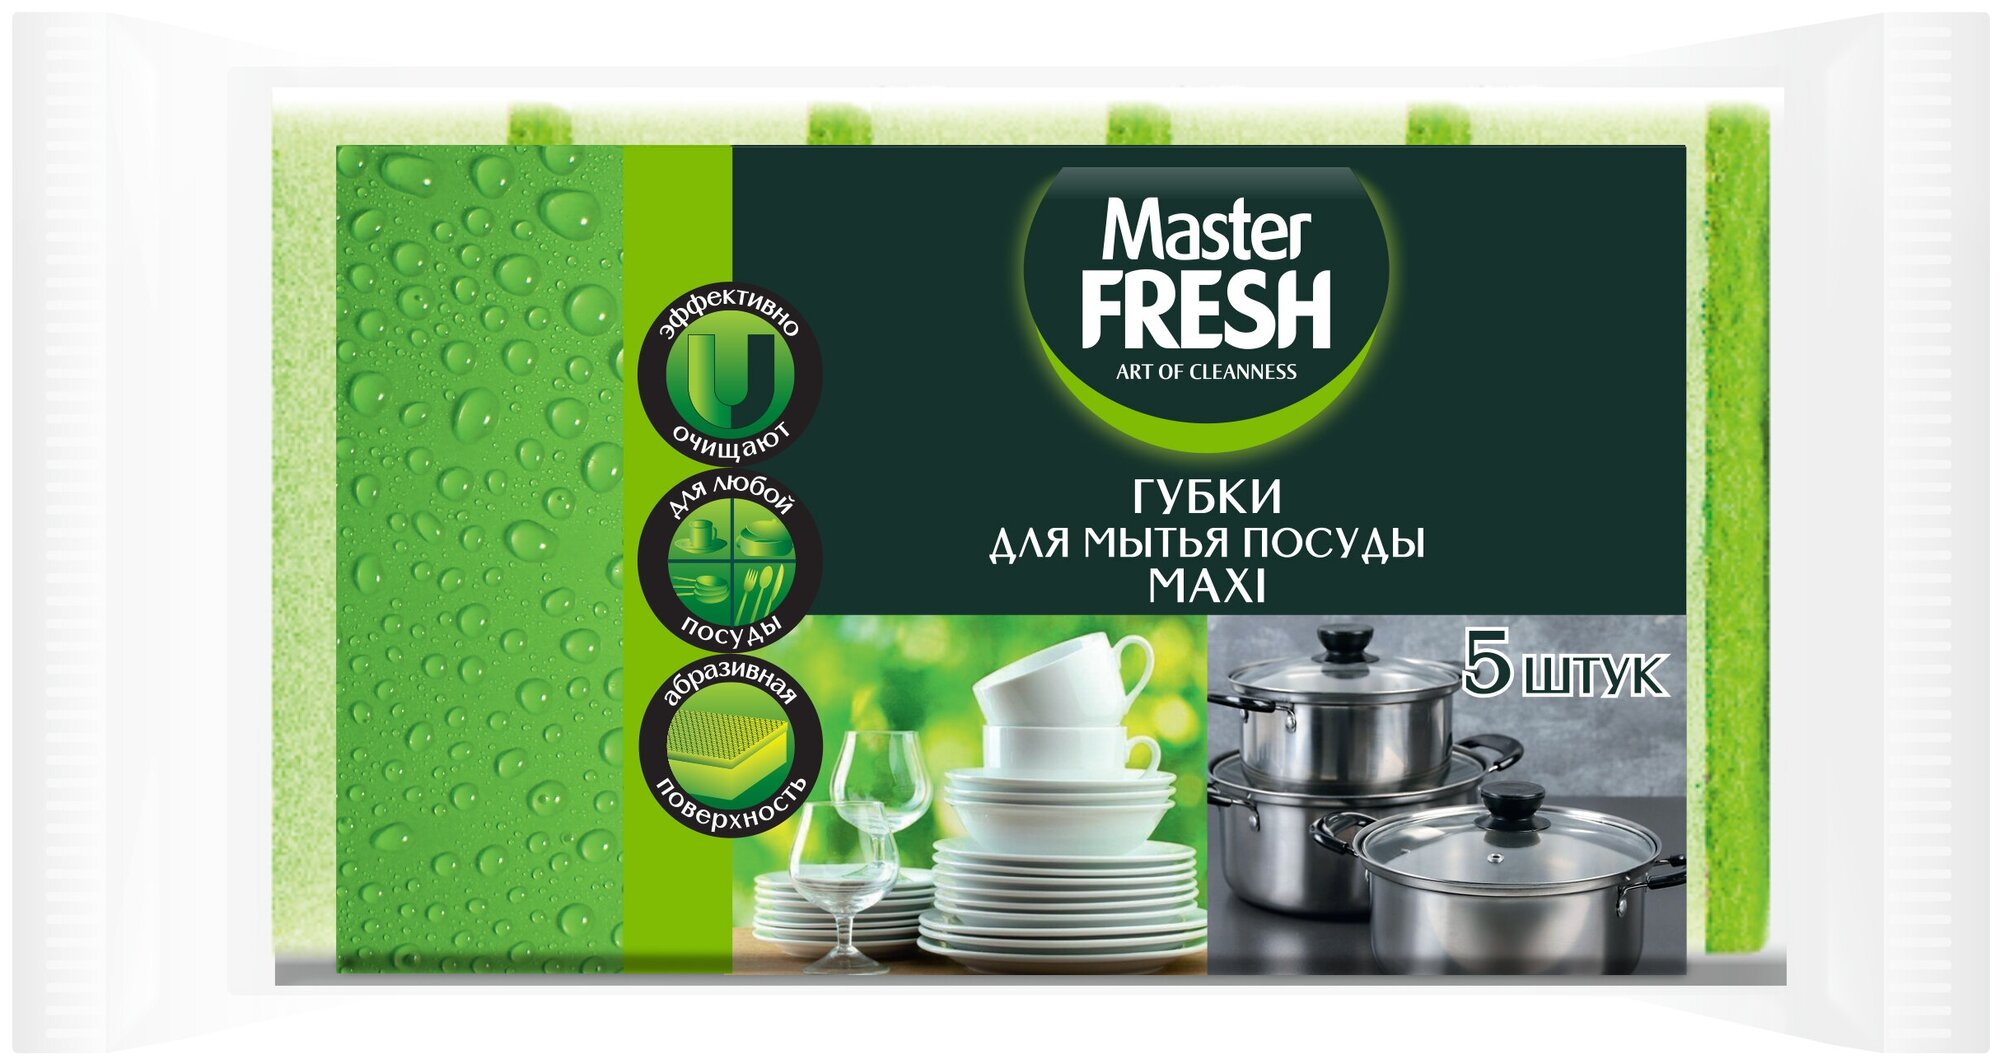 Губки для посуды Master FRESH Maxi, салатовый, 5 шт.